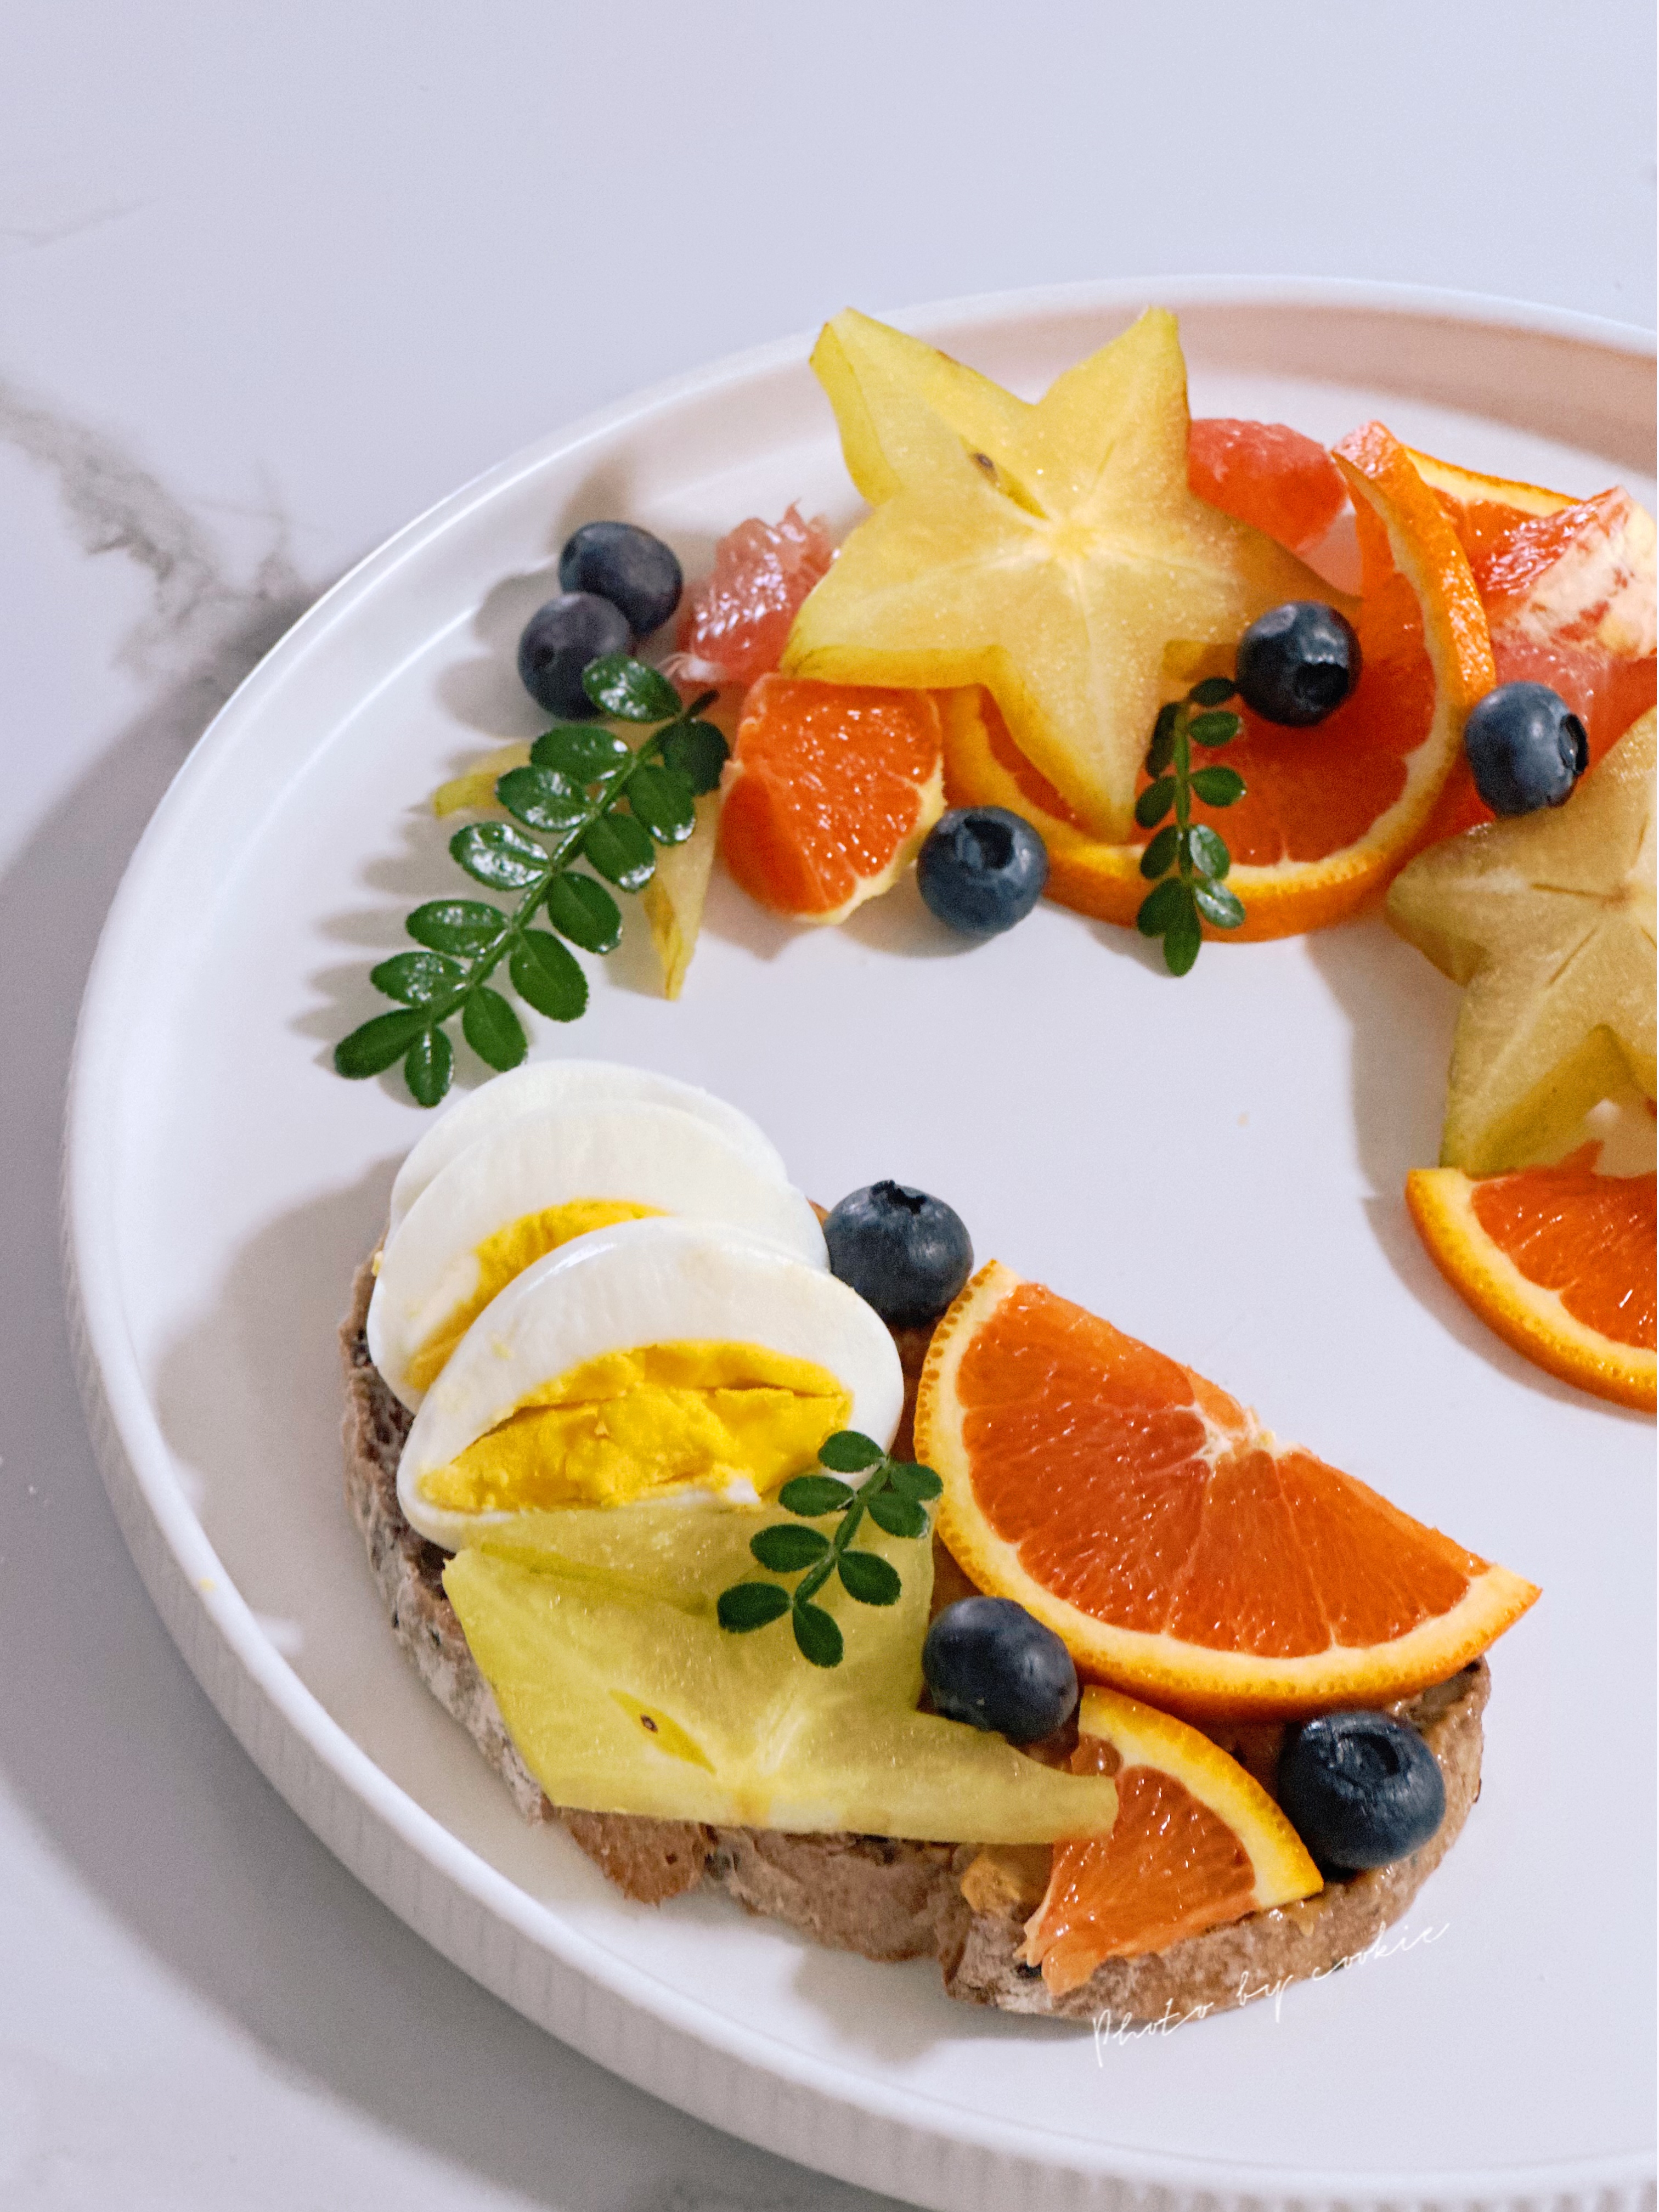 10分钟快手早餐:水果创意摆盘